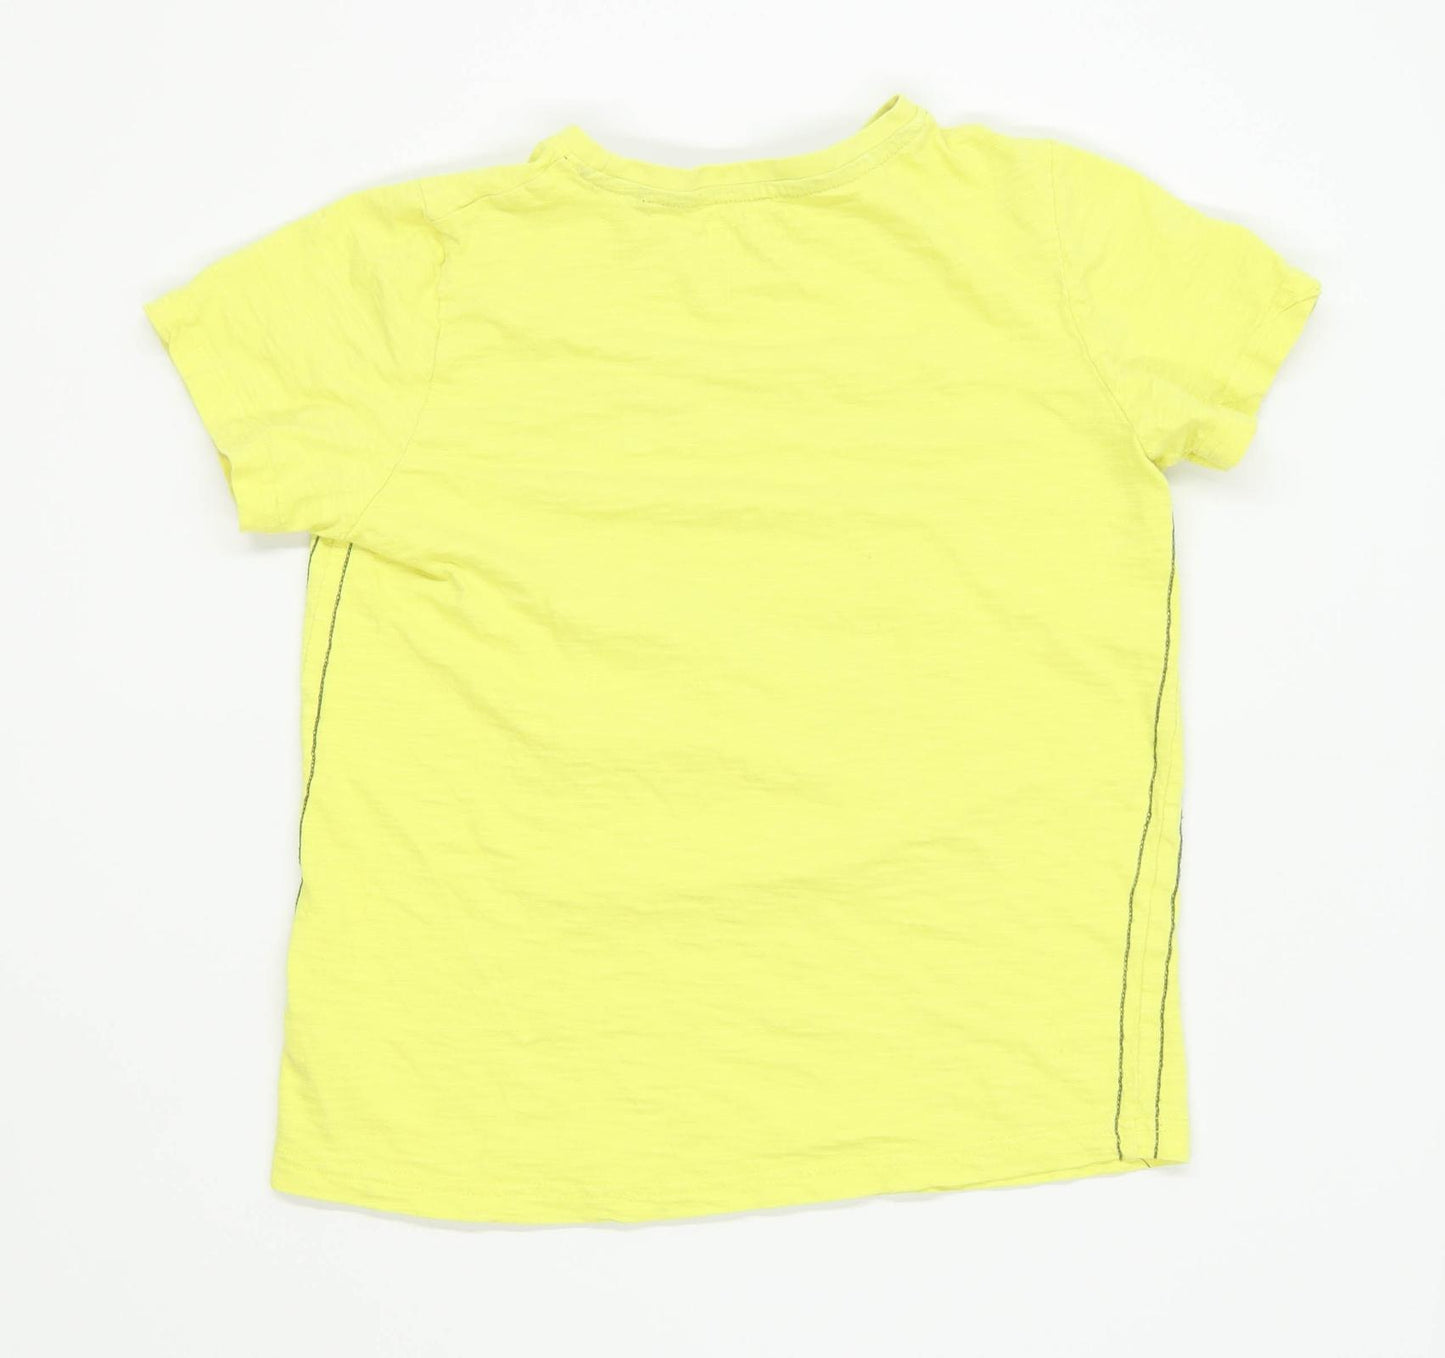 TU Boys Graphic Yellow T-Shirt Age 11 Years